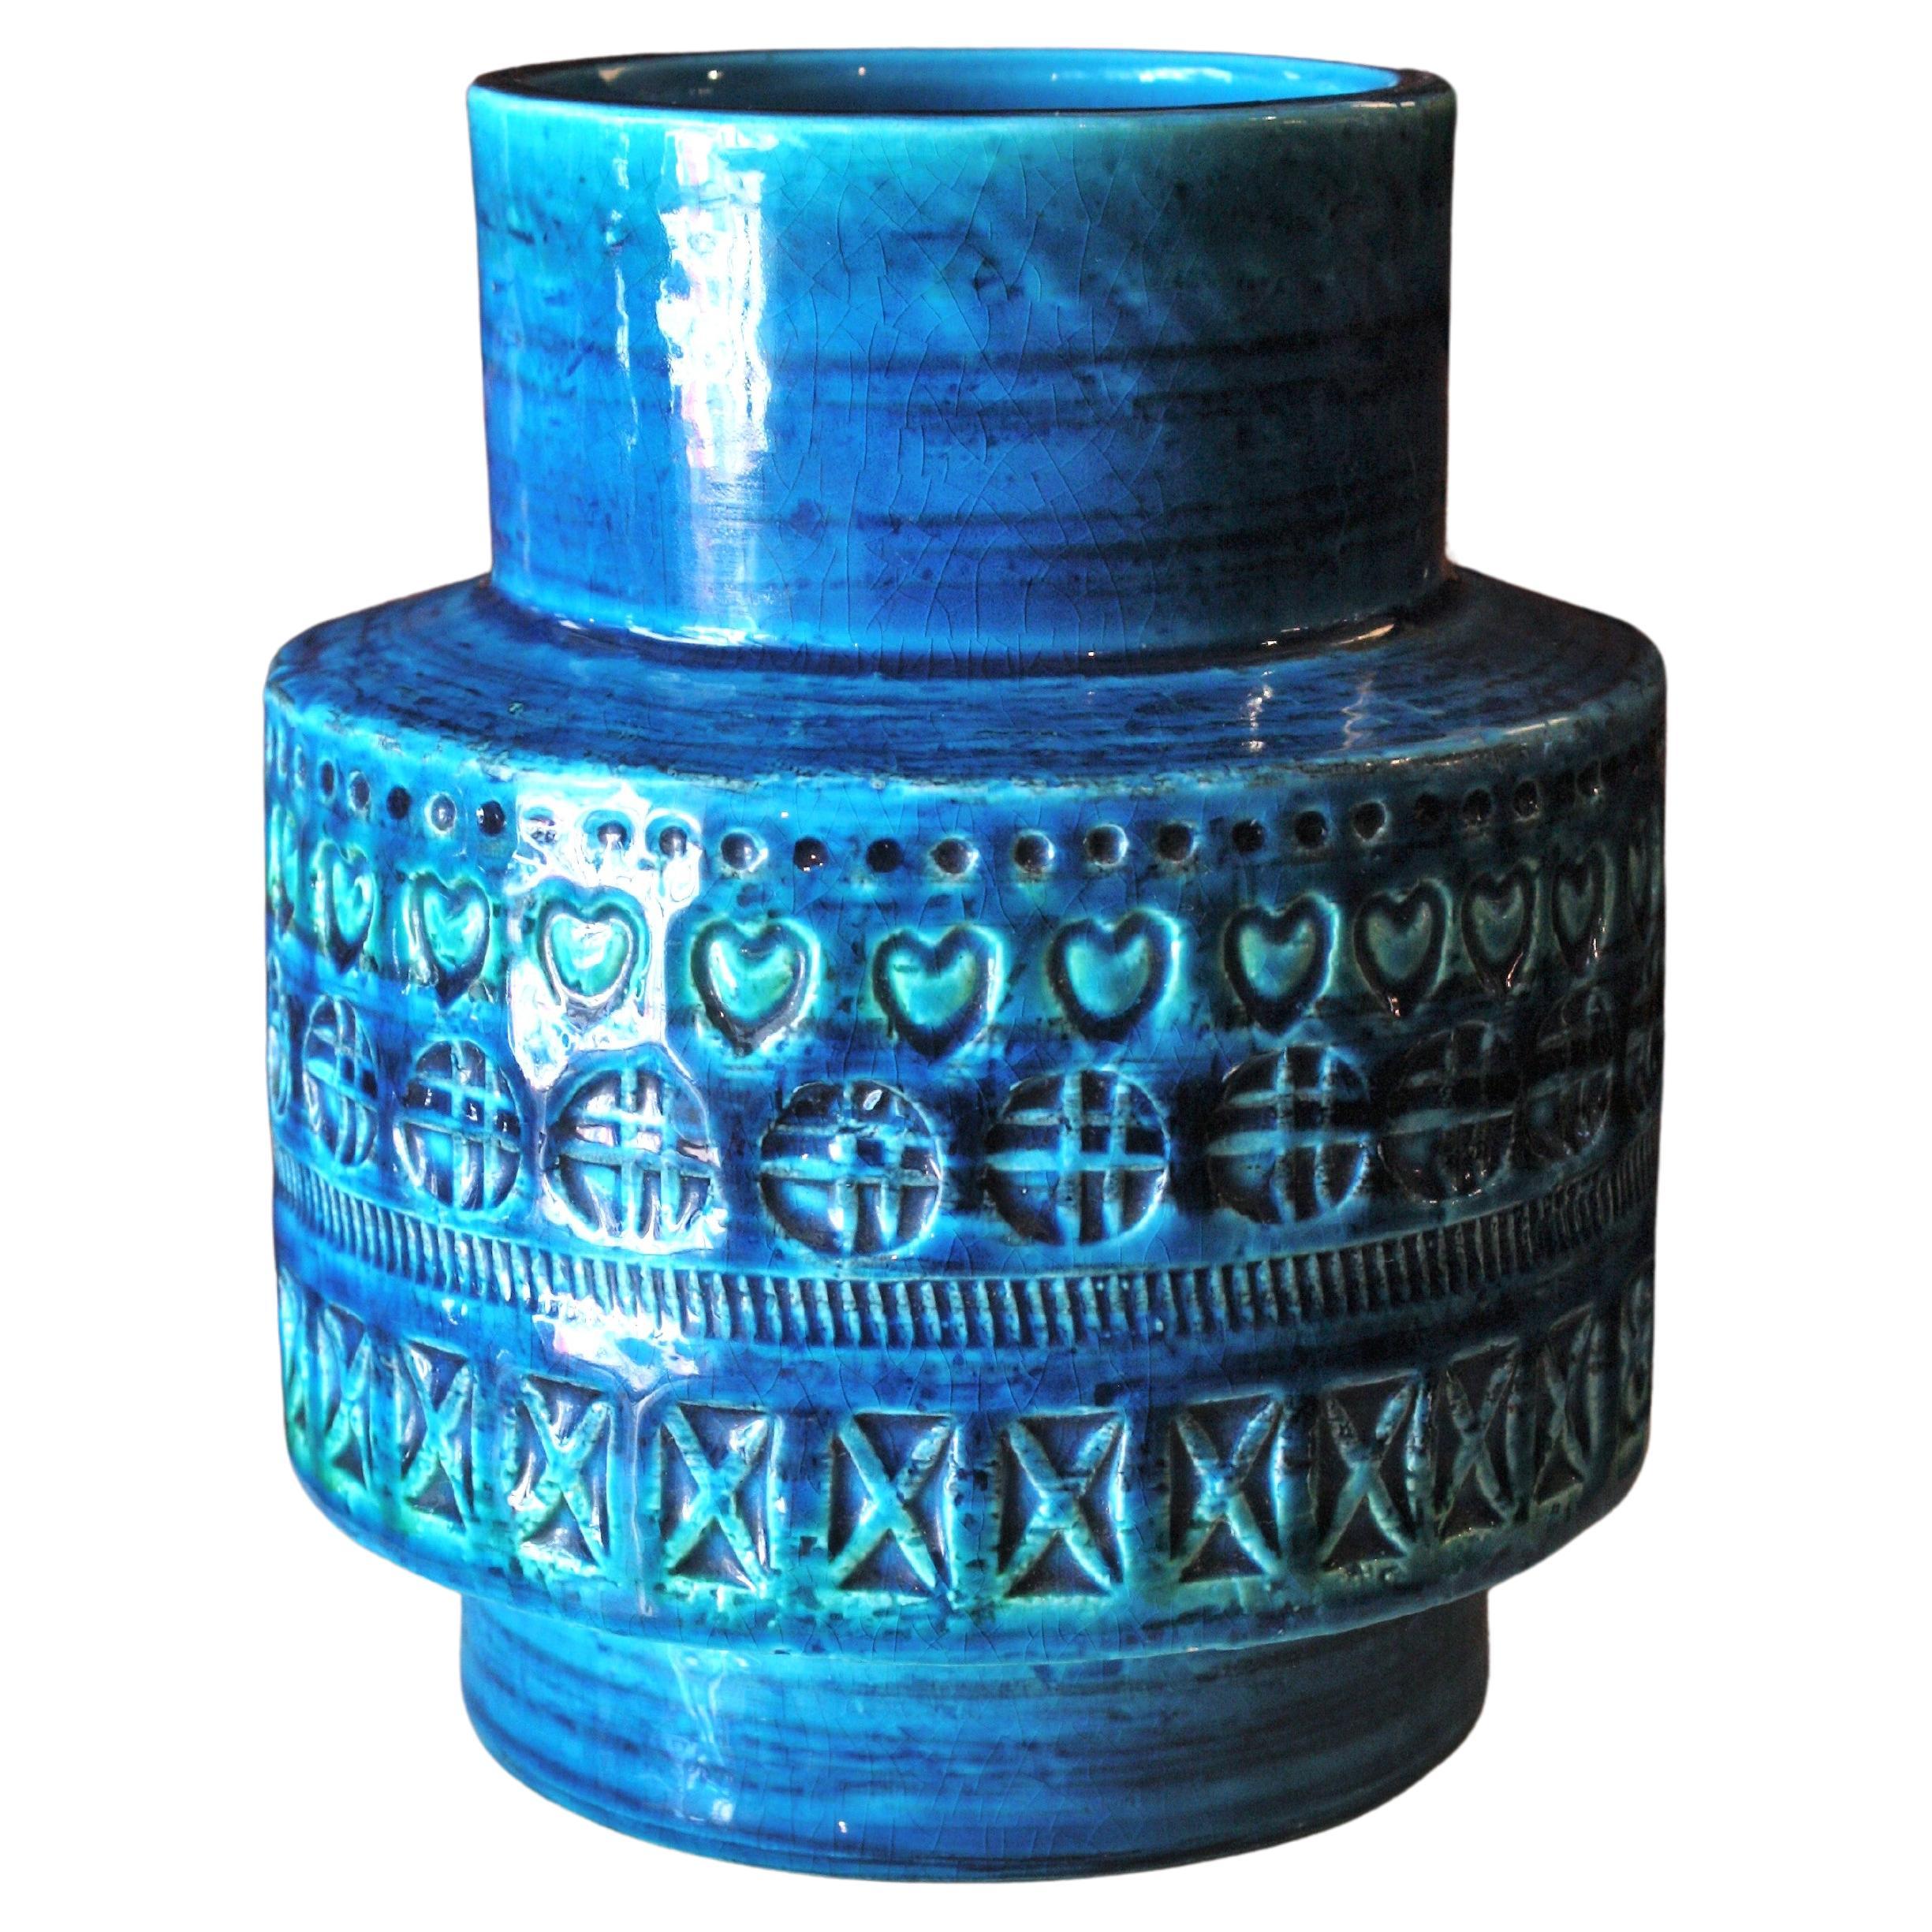 Bitossi Aldo Londi Rimini, blaue Keramikvase, 1960er-Jahre